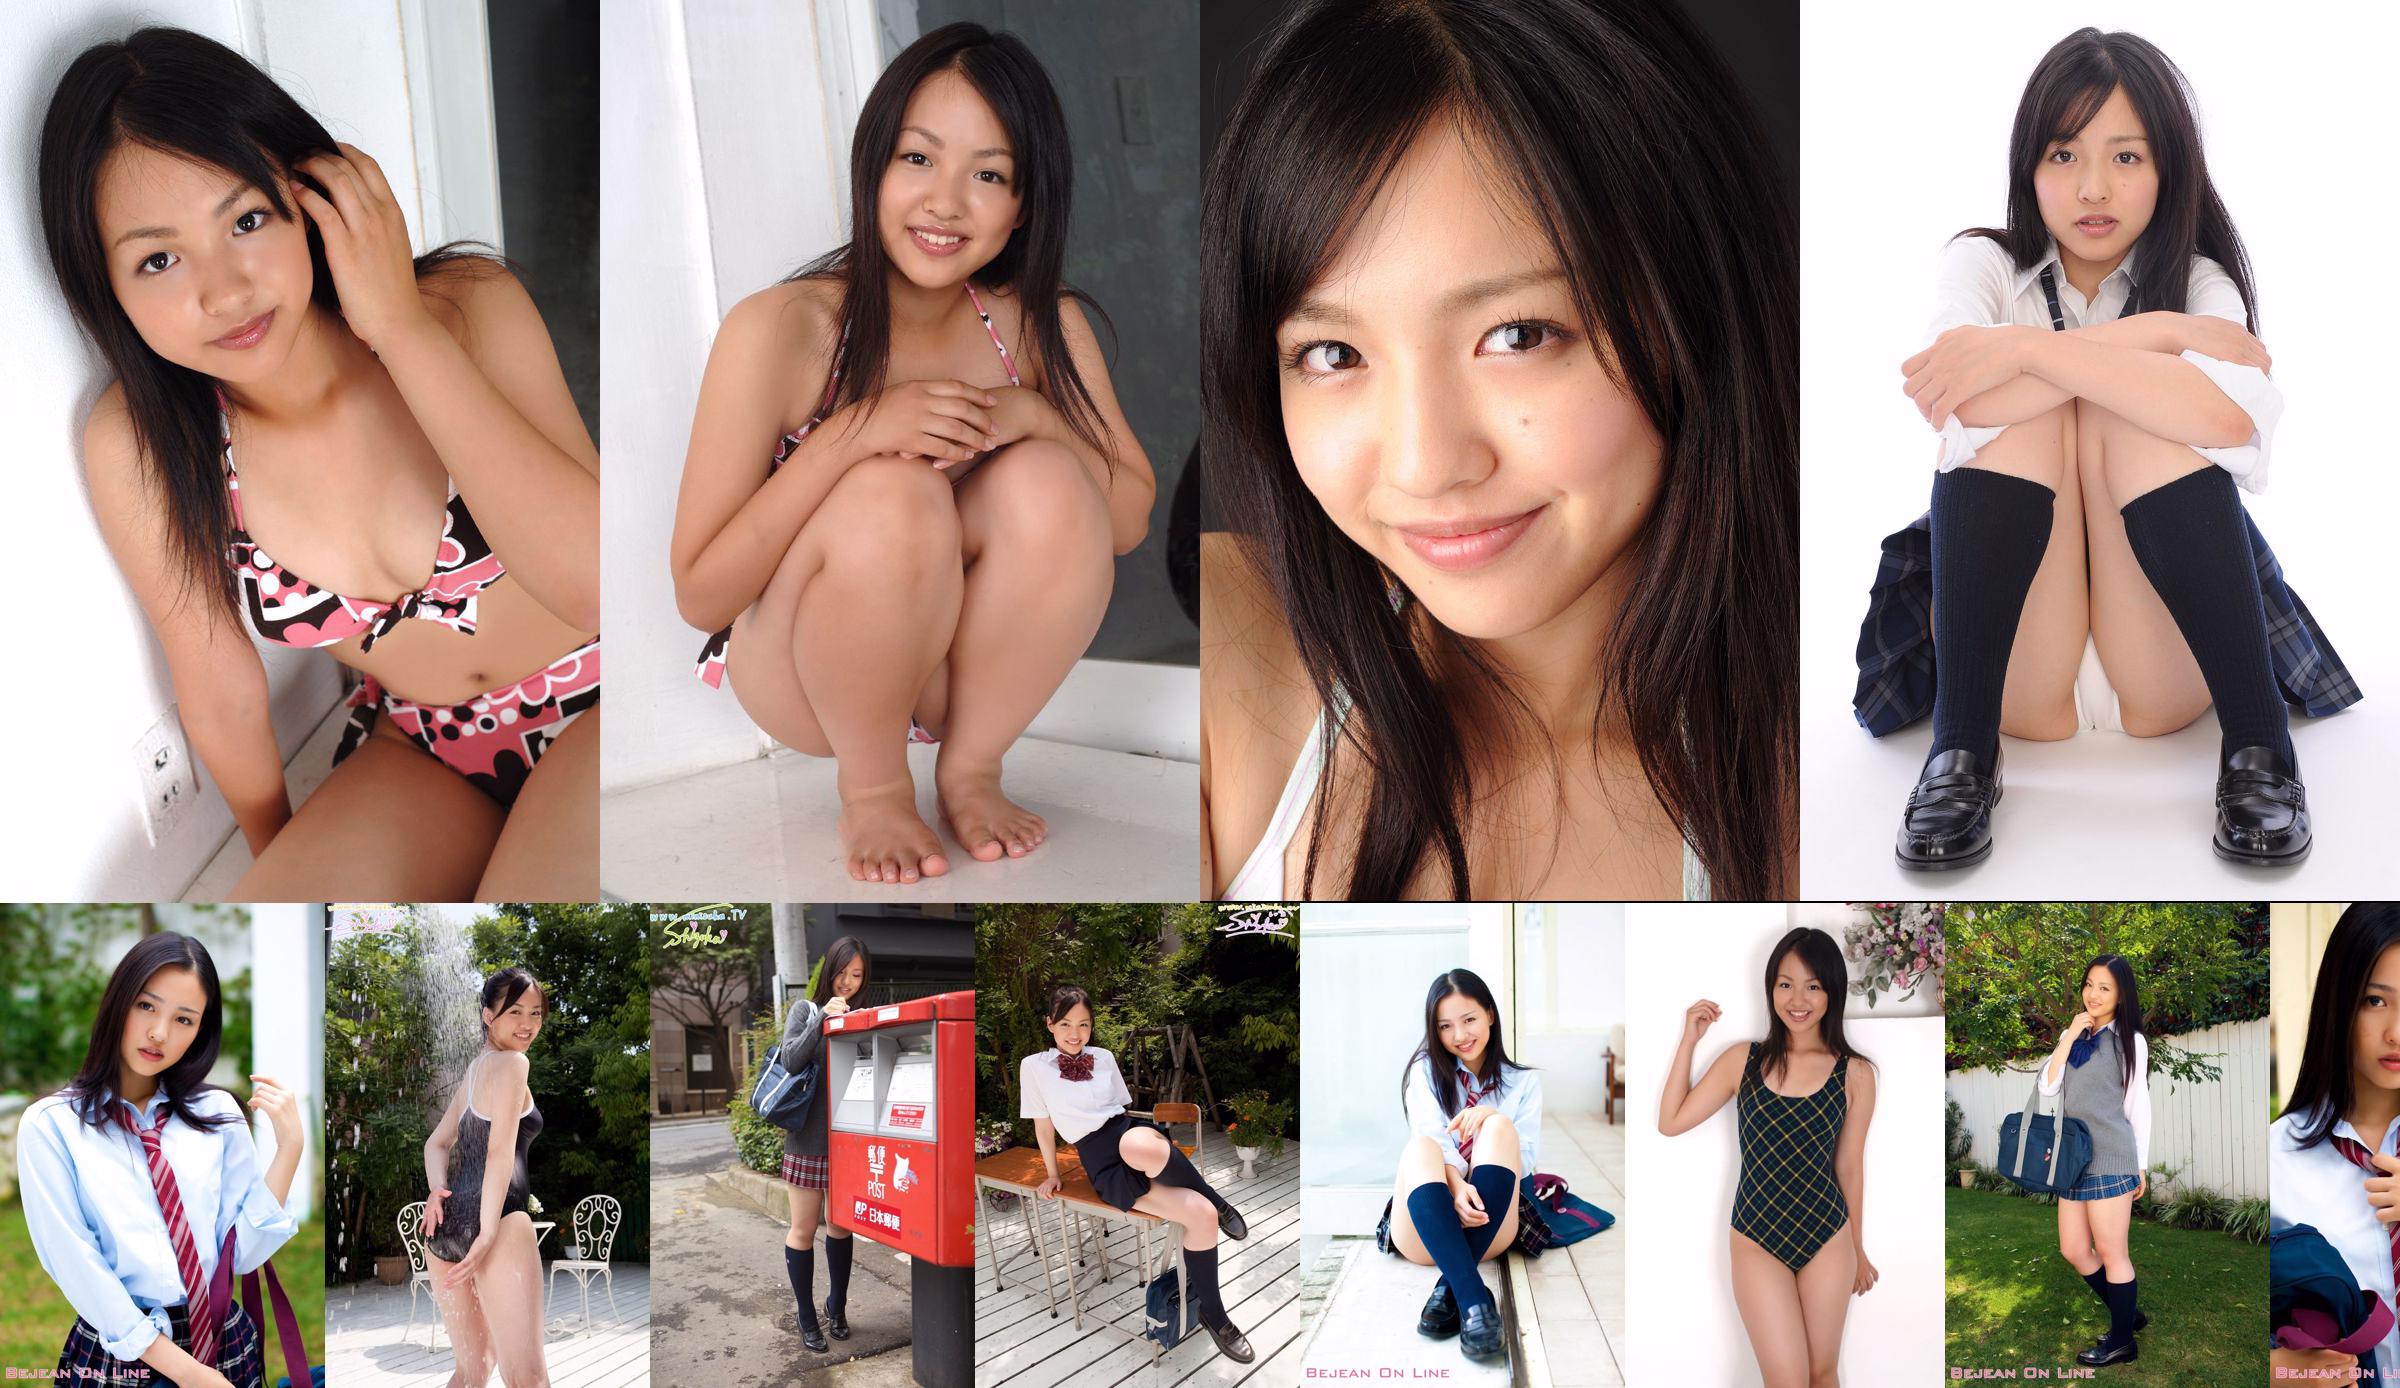 Scuola privata per ragazze Bejean Shizuka Shizuka / Miyazawa Shizuka [Bejean On Line] No.409bc8 Pagina 1